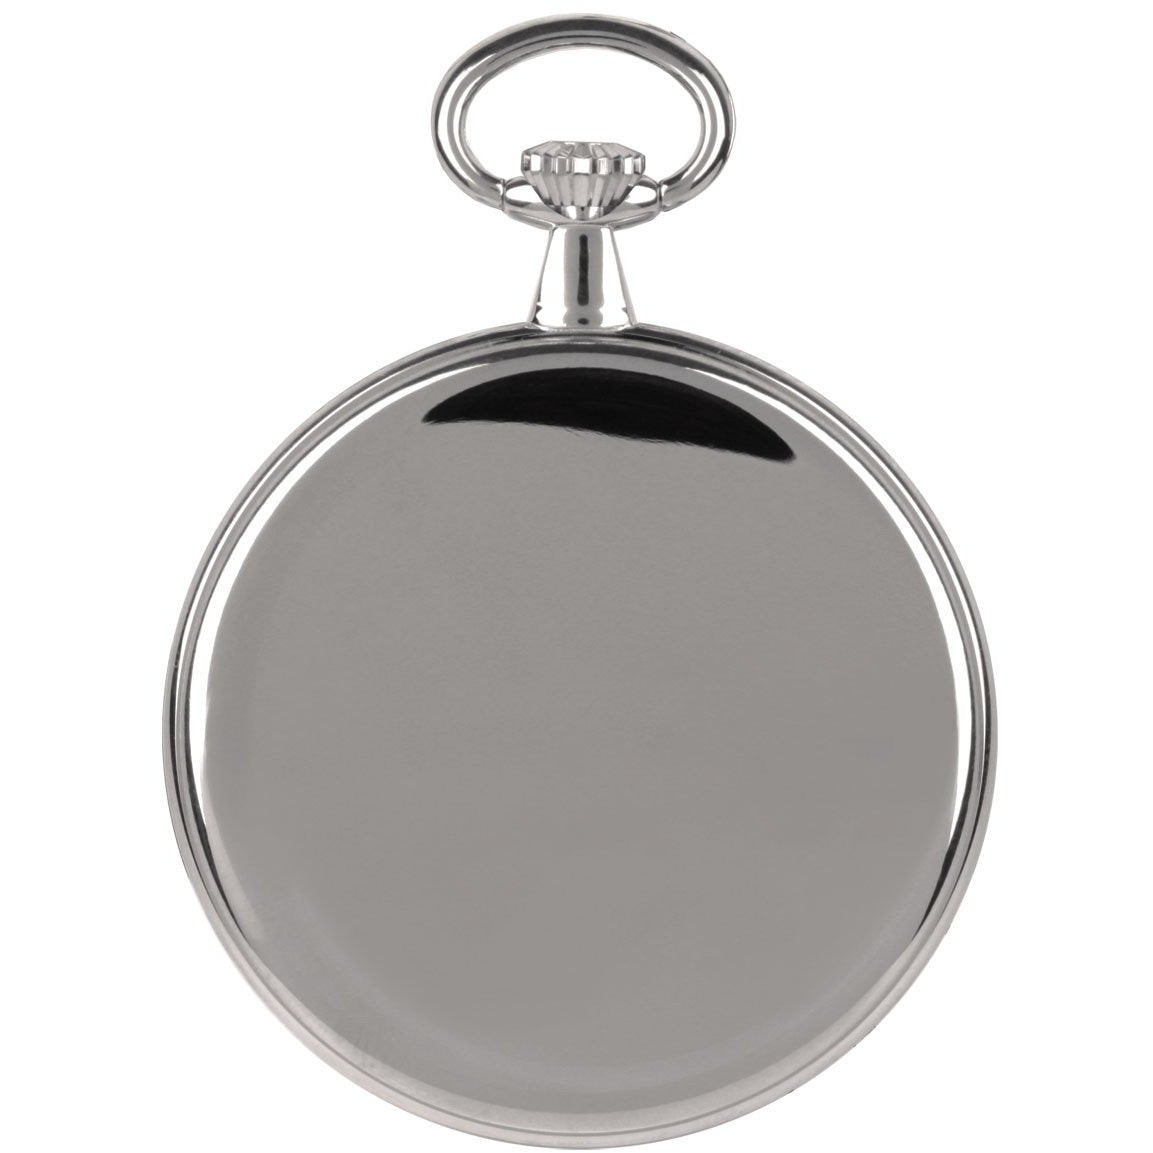 Silver Pocket Watch Royal London 90015.01